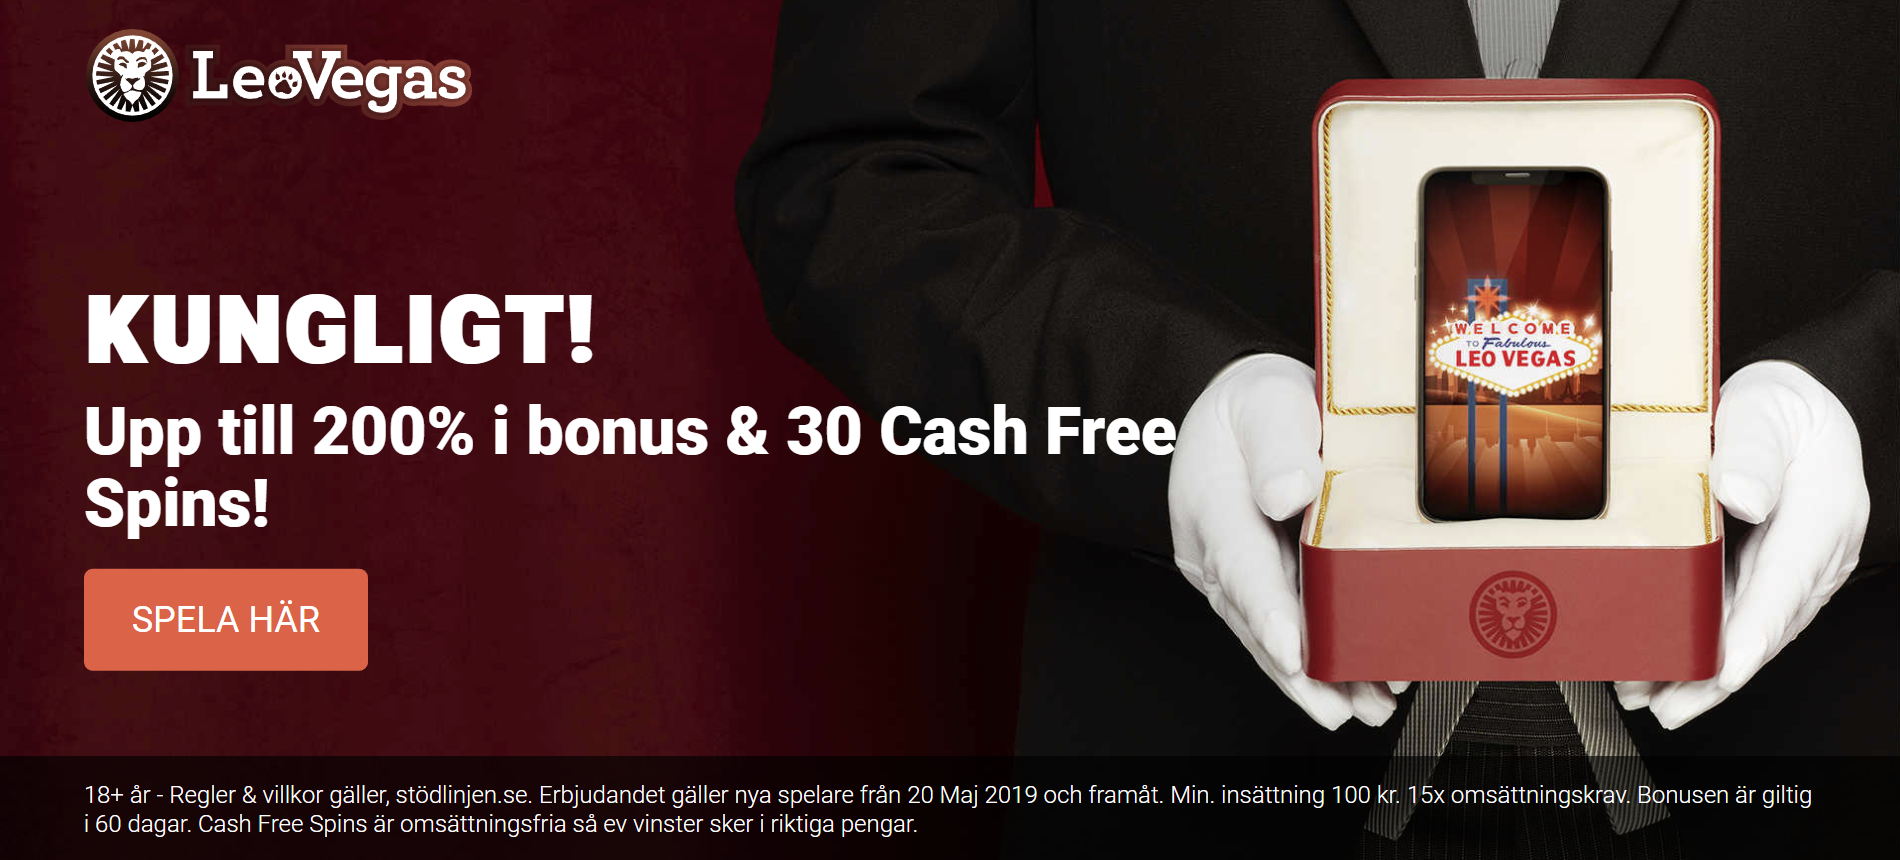 Leovegas casino bonus - 200% bonus +30 cash free spins